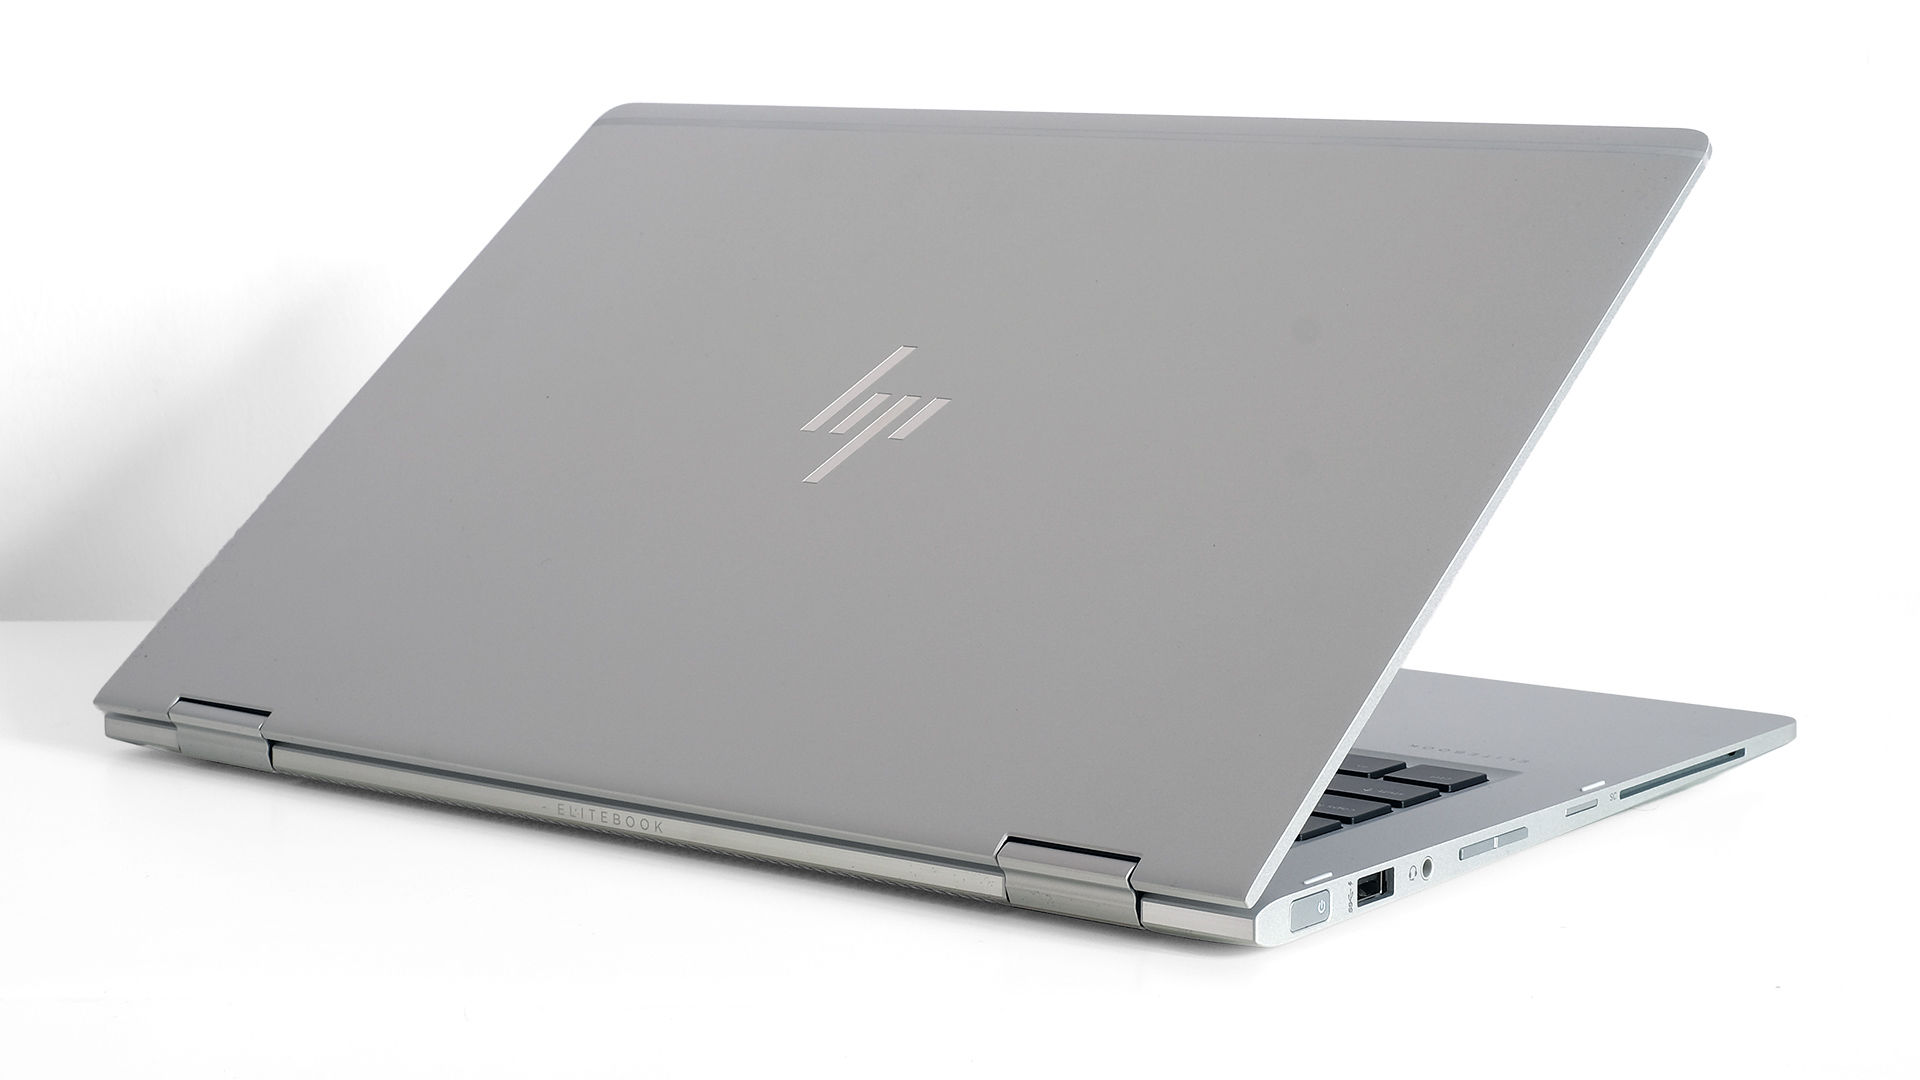 Купить Ноутбук Hp Elitebook X360 1030 G3